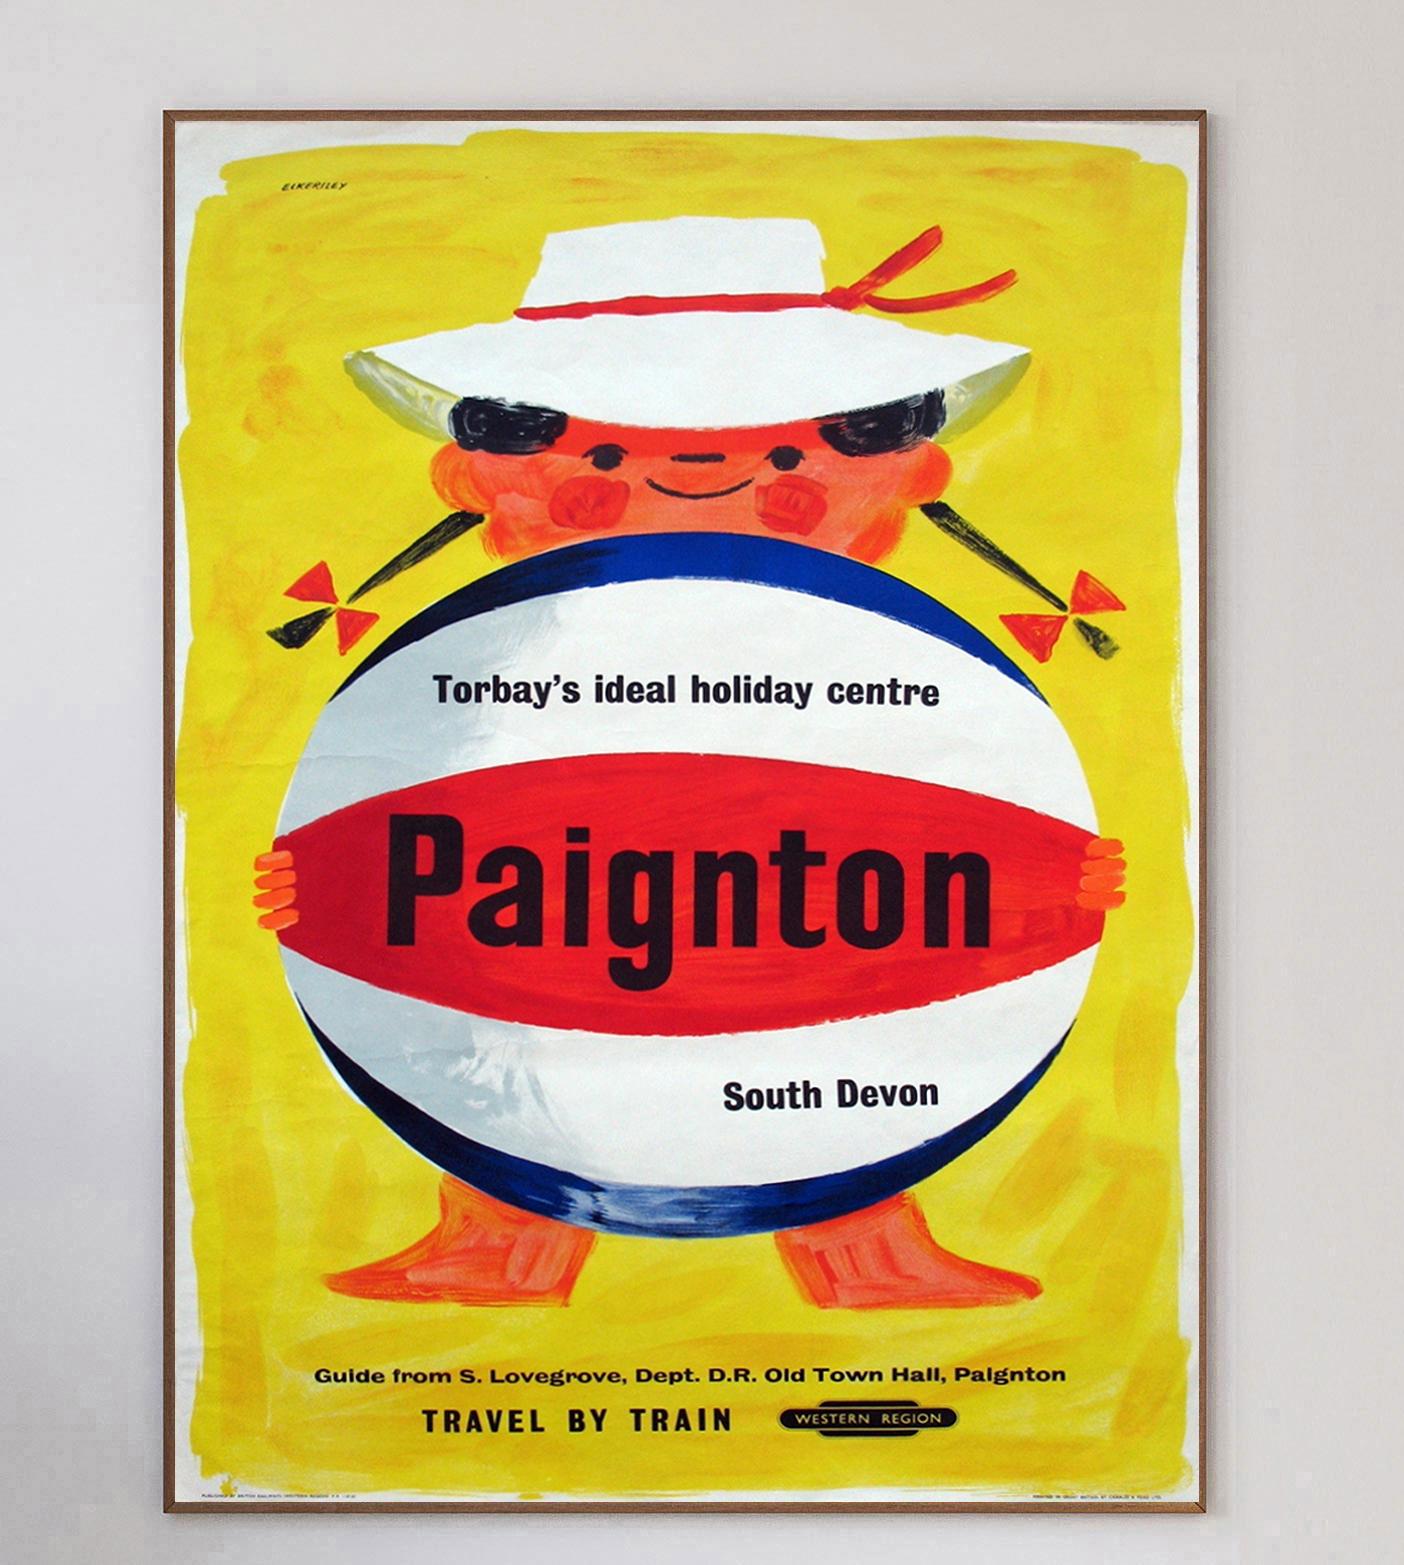 Cette affiche très ludique a été créée en 1960 pour les chemins de fer britanniques, afin de promouvoir leurs lignes vers Paignton, dans le Devon, en Angleterre. Intitulée 